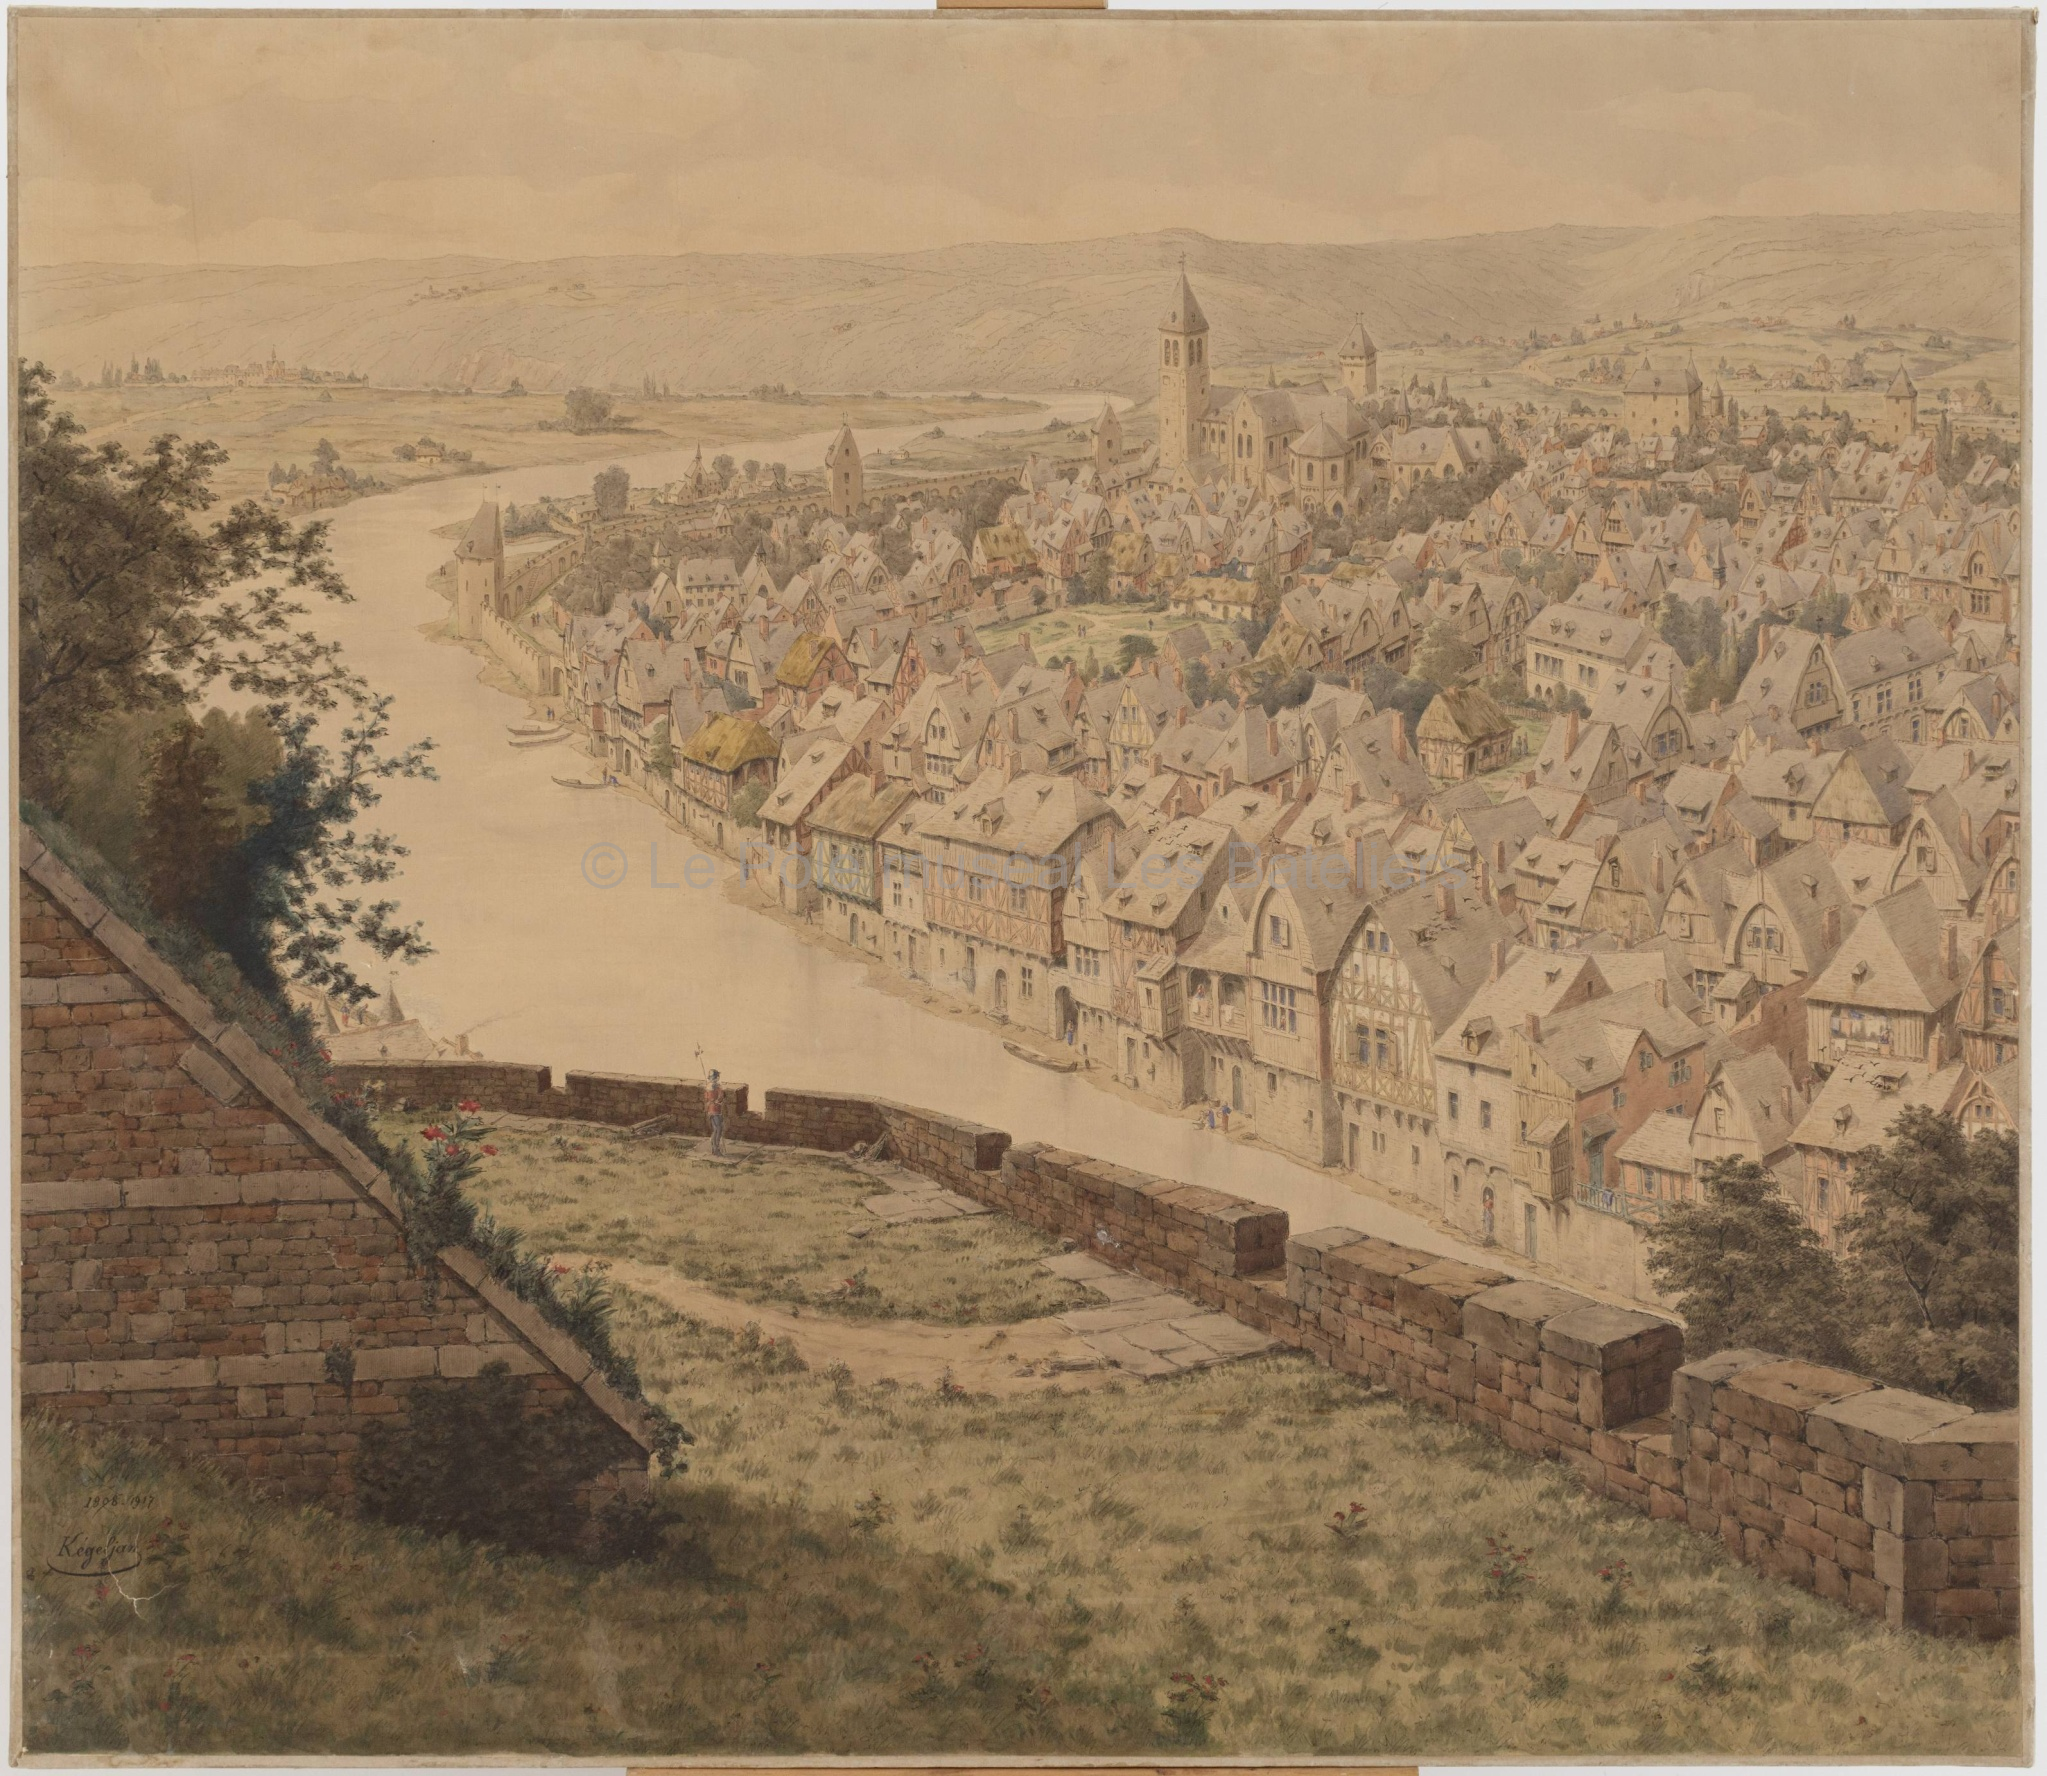 Panorama de la ville au XIVe siècle pris du donjon du château-fort